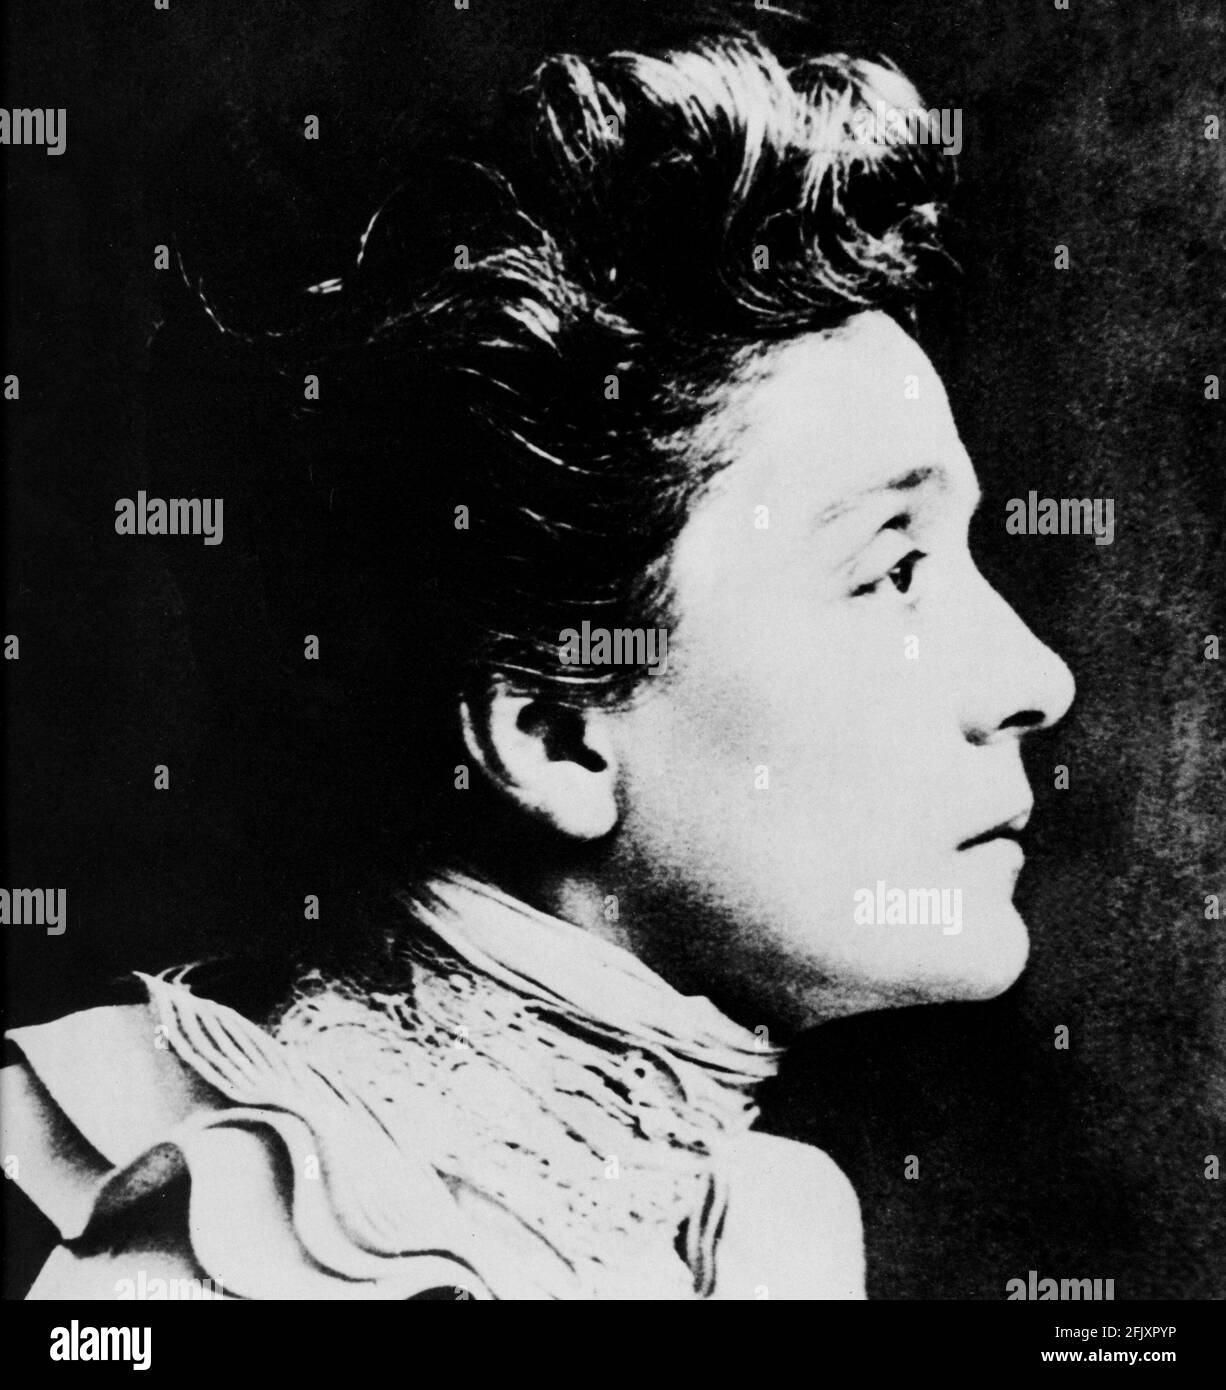 1887 , Paris , Frankreich : die berühmteste italienische Schauspielerin ELEONORA DUSE ( 1858 - 1924 ), Geliebte des Dichters GABRIELE D' ANNUNZIO . Foto von Bary , Paris. - THEATER - TEATRO - DANNUNZIO - D'ANNUNZIO - divina - attrice teatrale - profilo - Profil - Chignon - Kragen - colletto ---- Archivio GBB Stockfoto